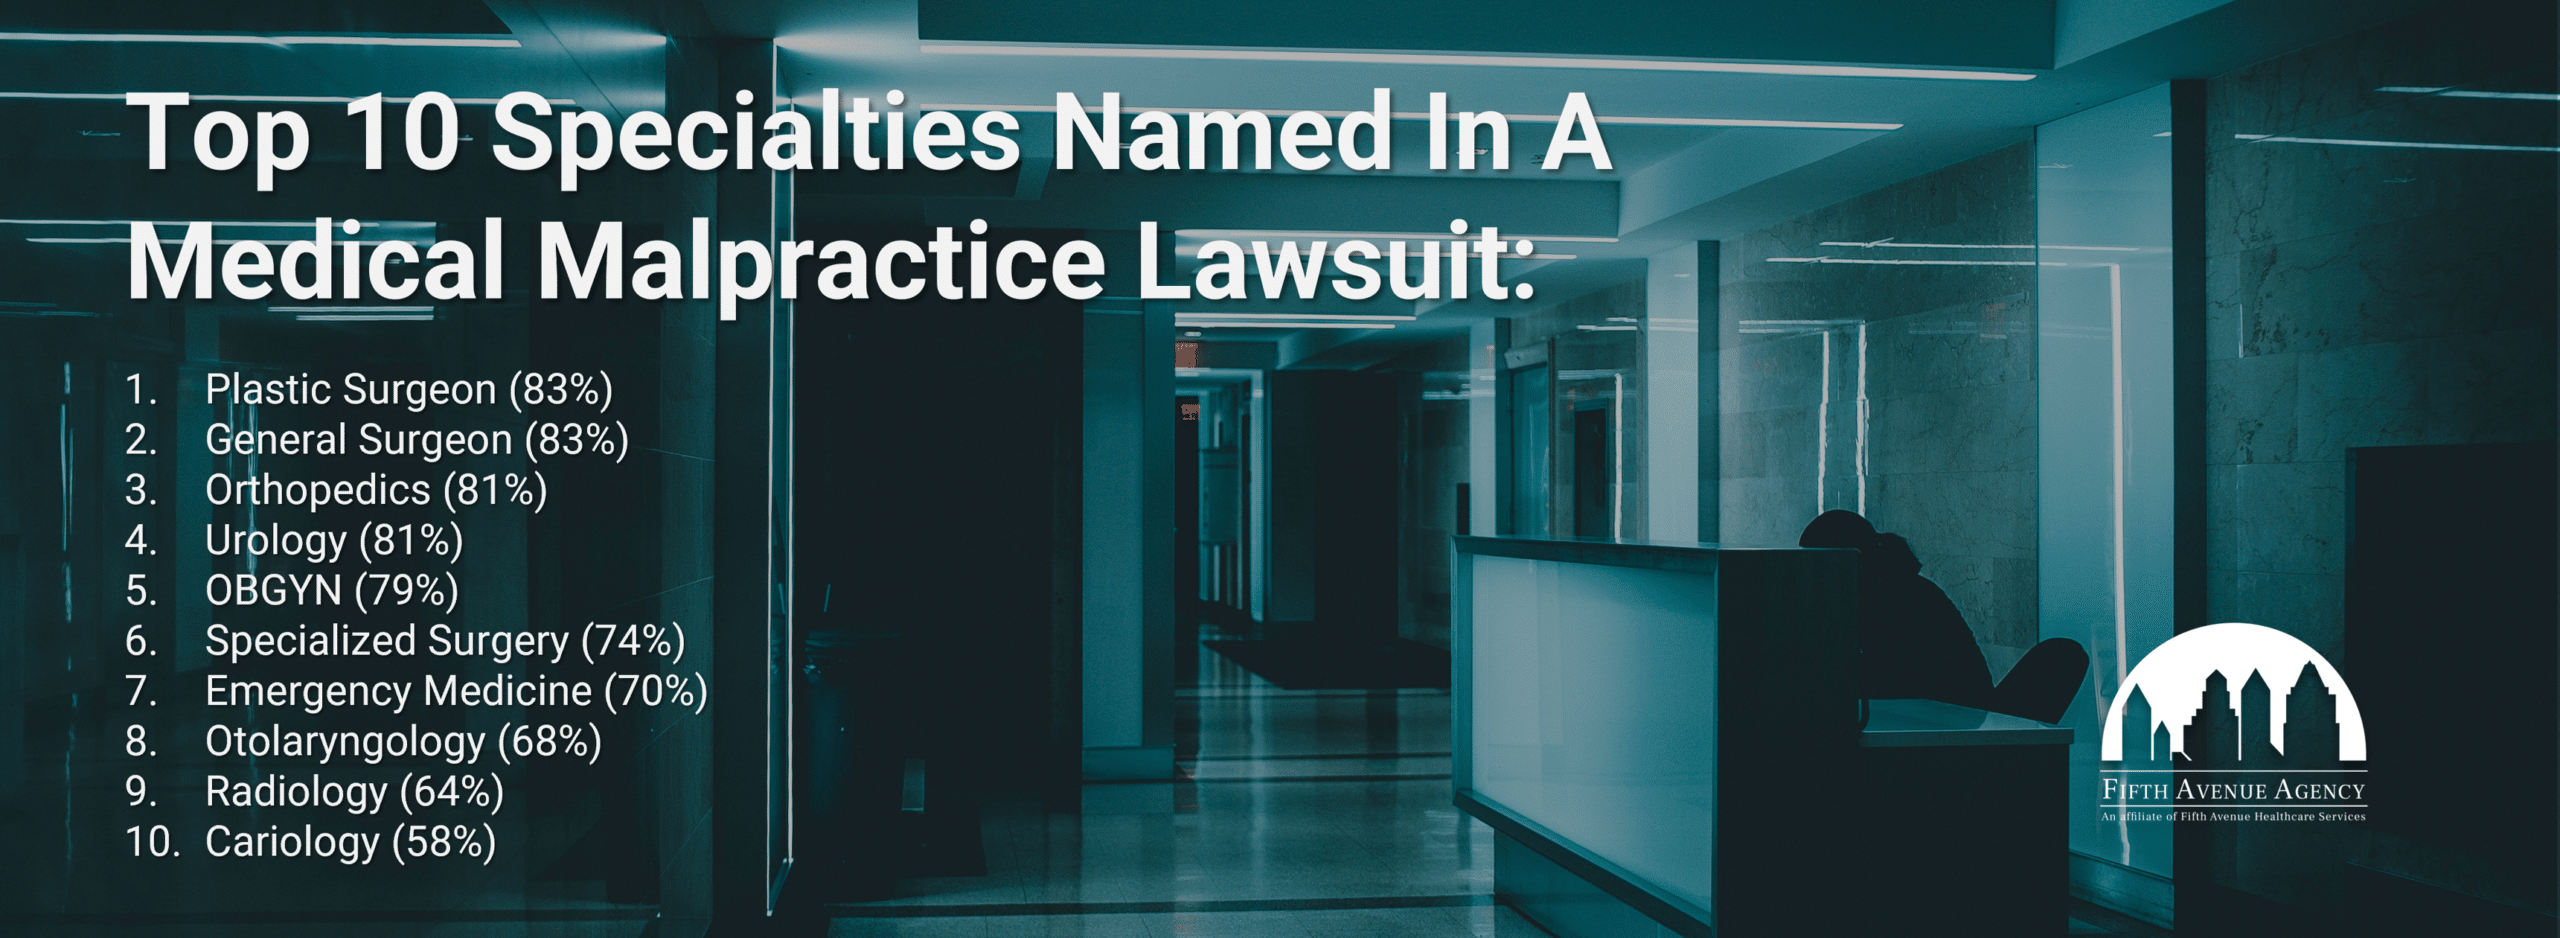 Top 10 Specialties Named In Medical Malpractice Lawsuit